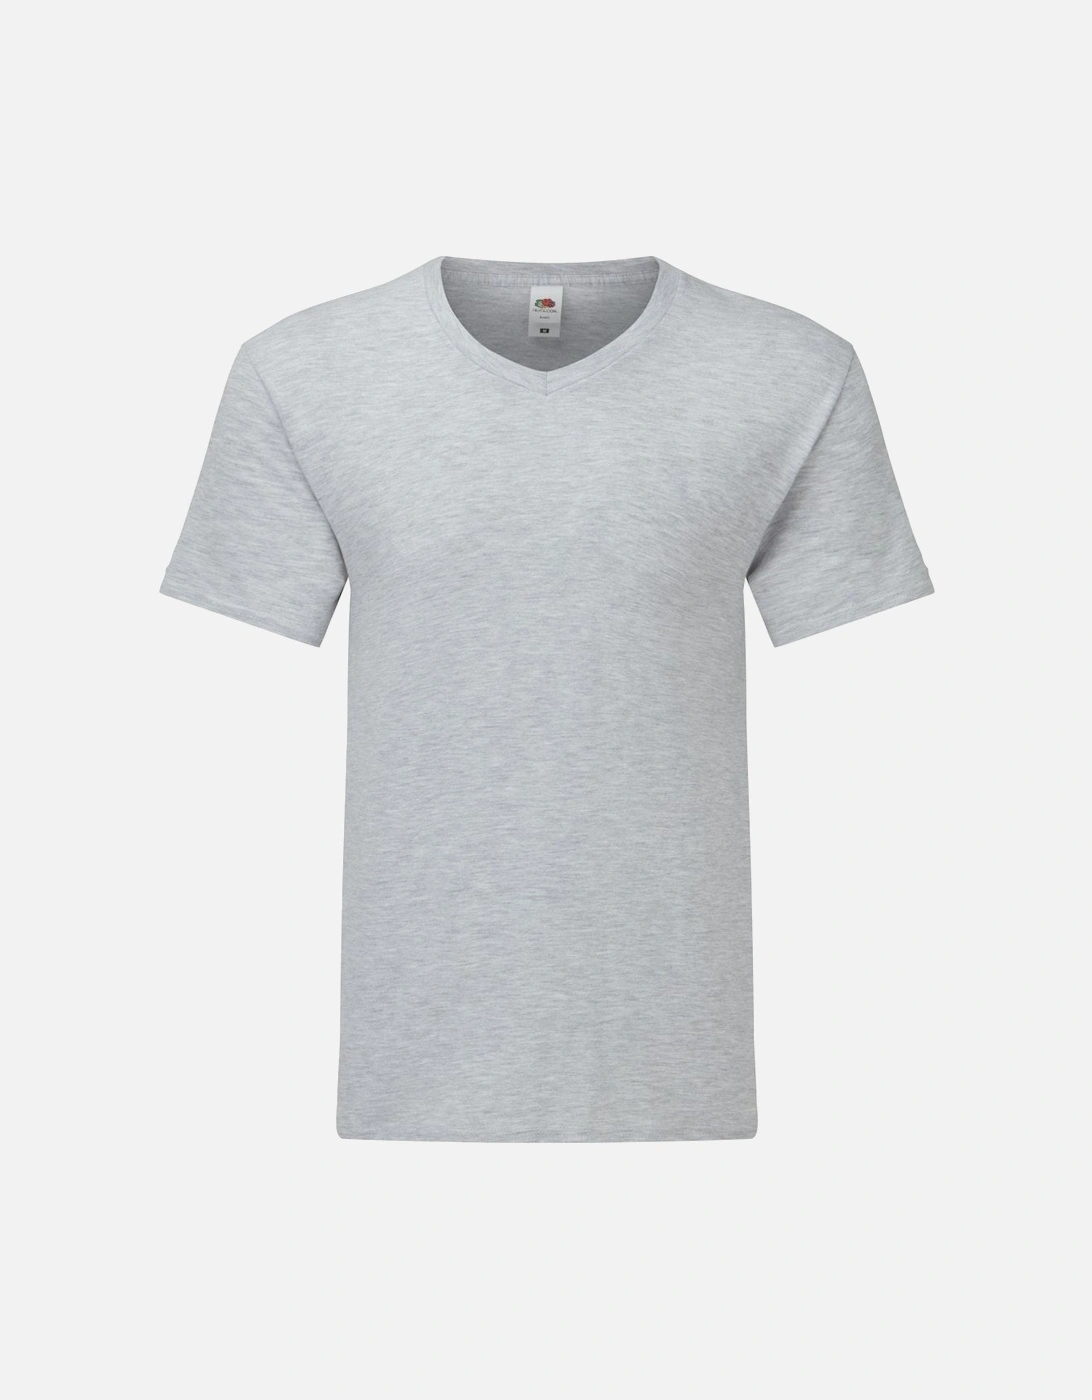 Mens Iconic 150 V Neck T-Shirt, 3 of 2